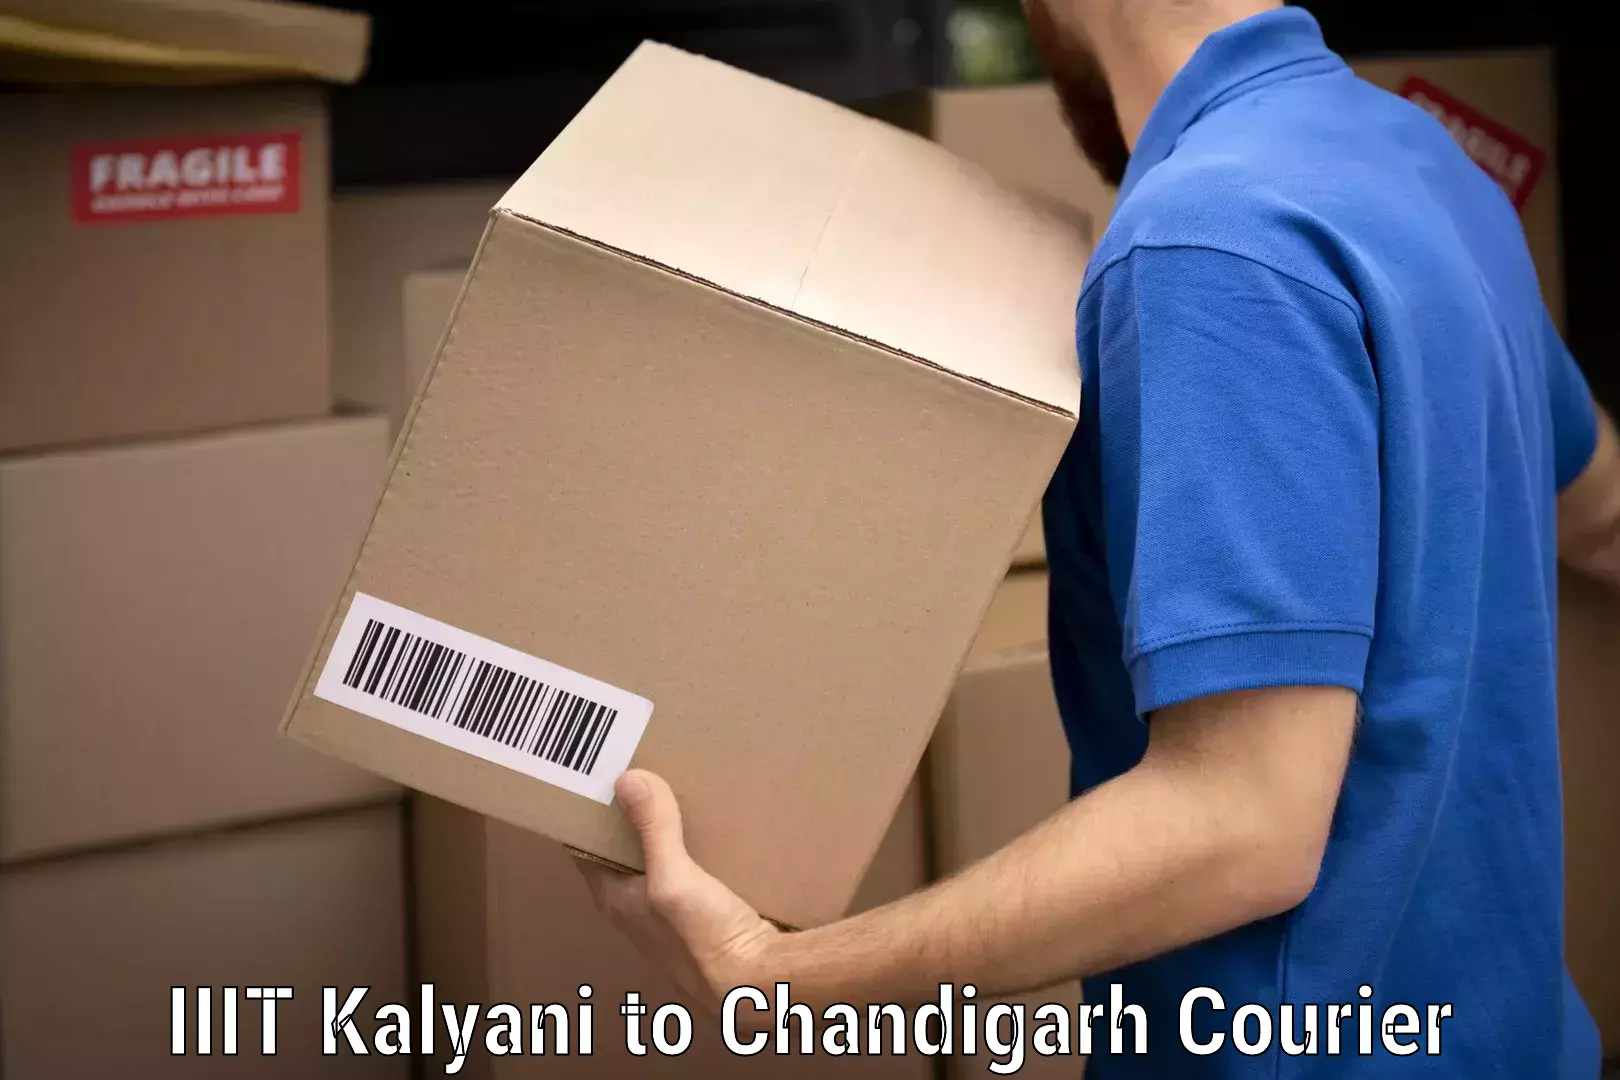 Furniture moving experts IIIT Kalyani to Chandigarh